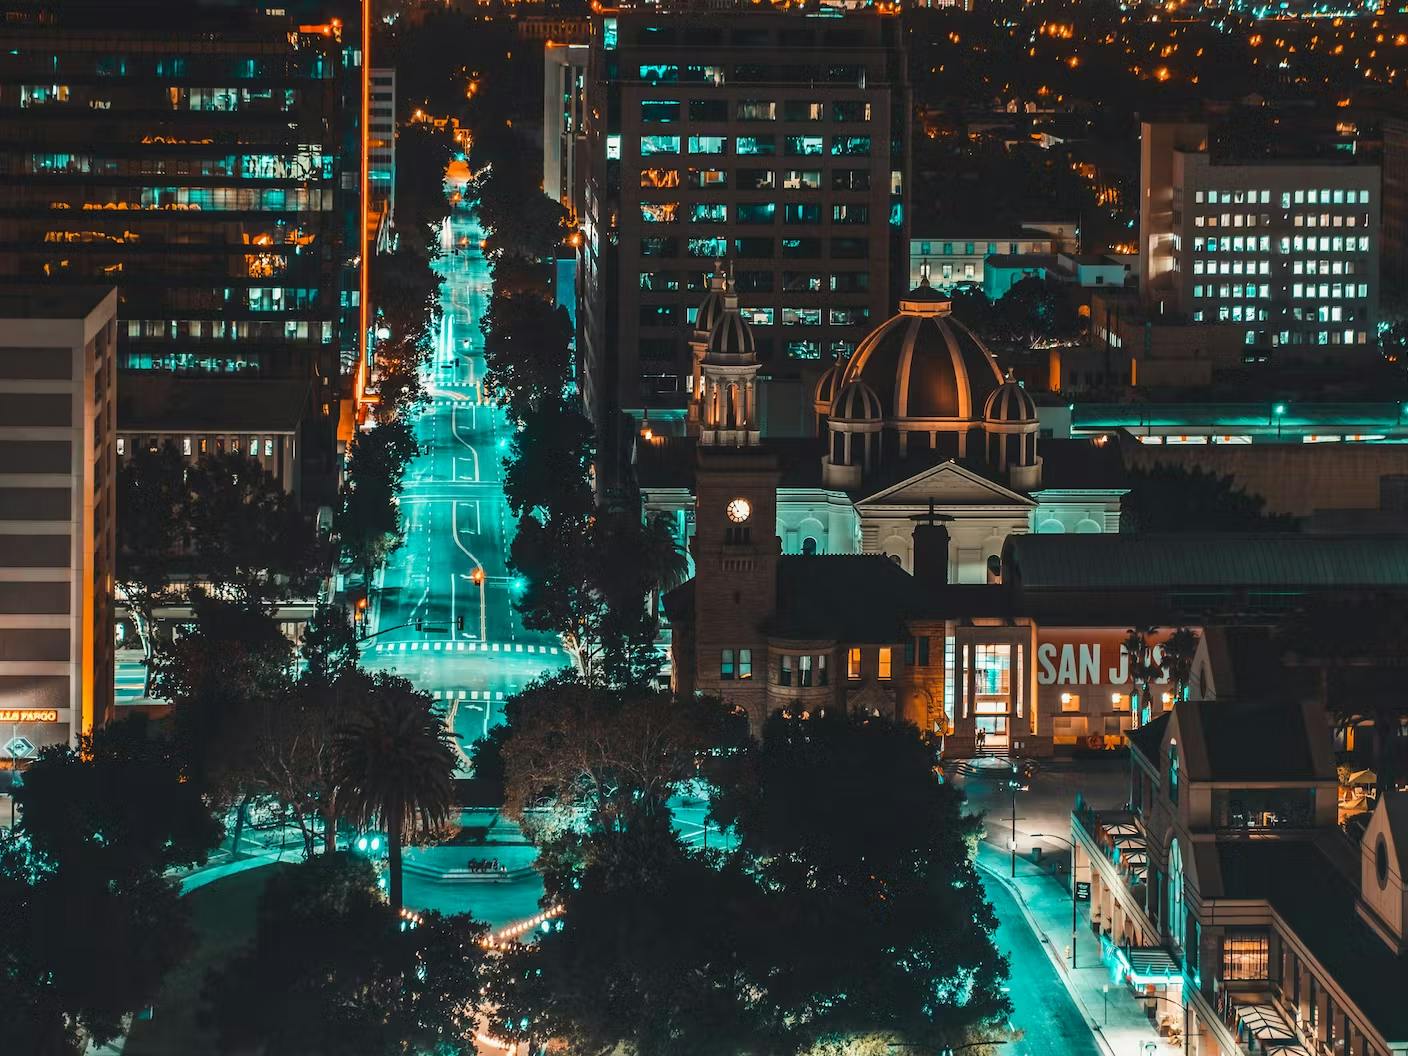 San Jose at Night